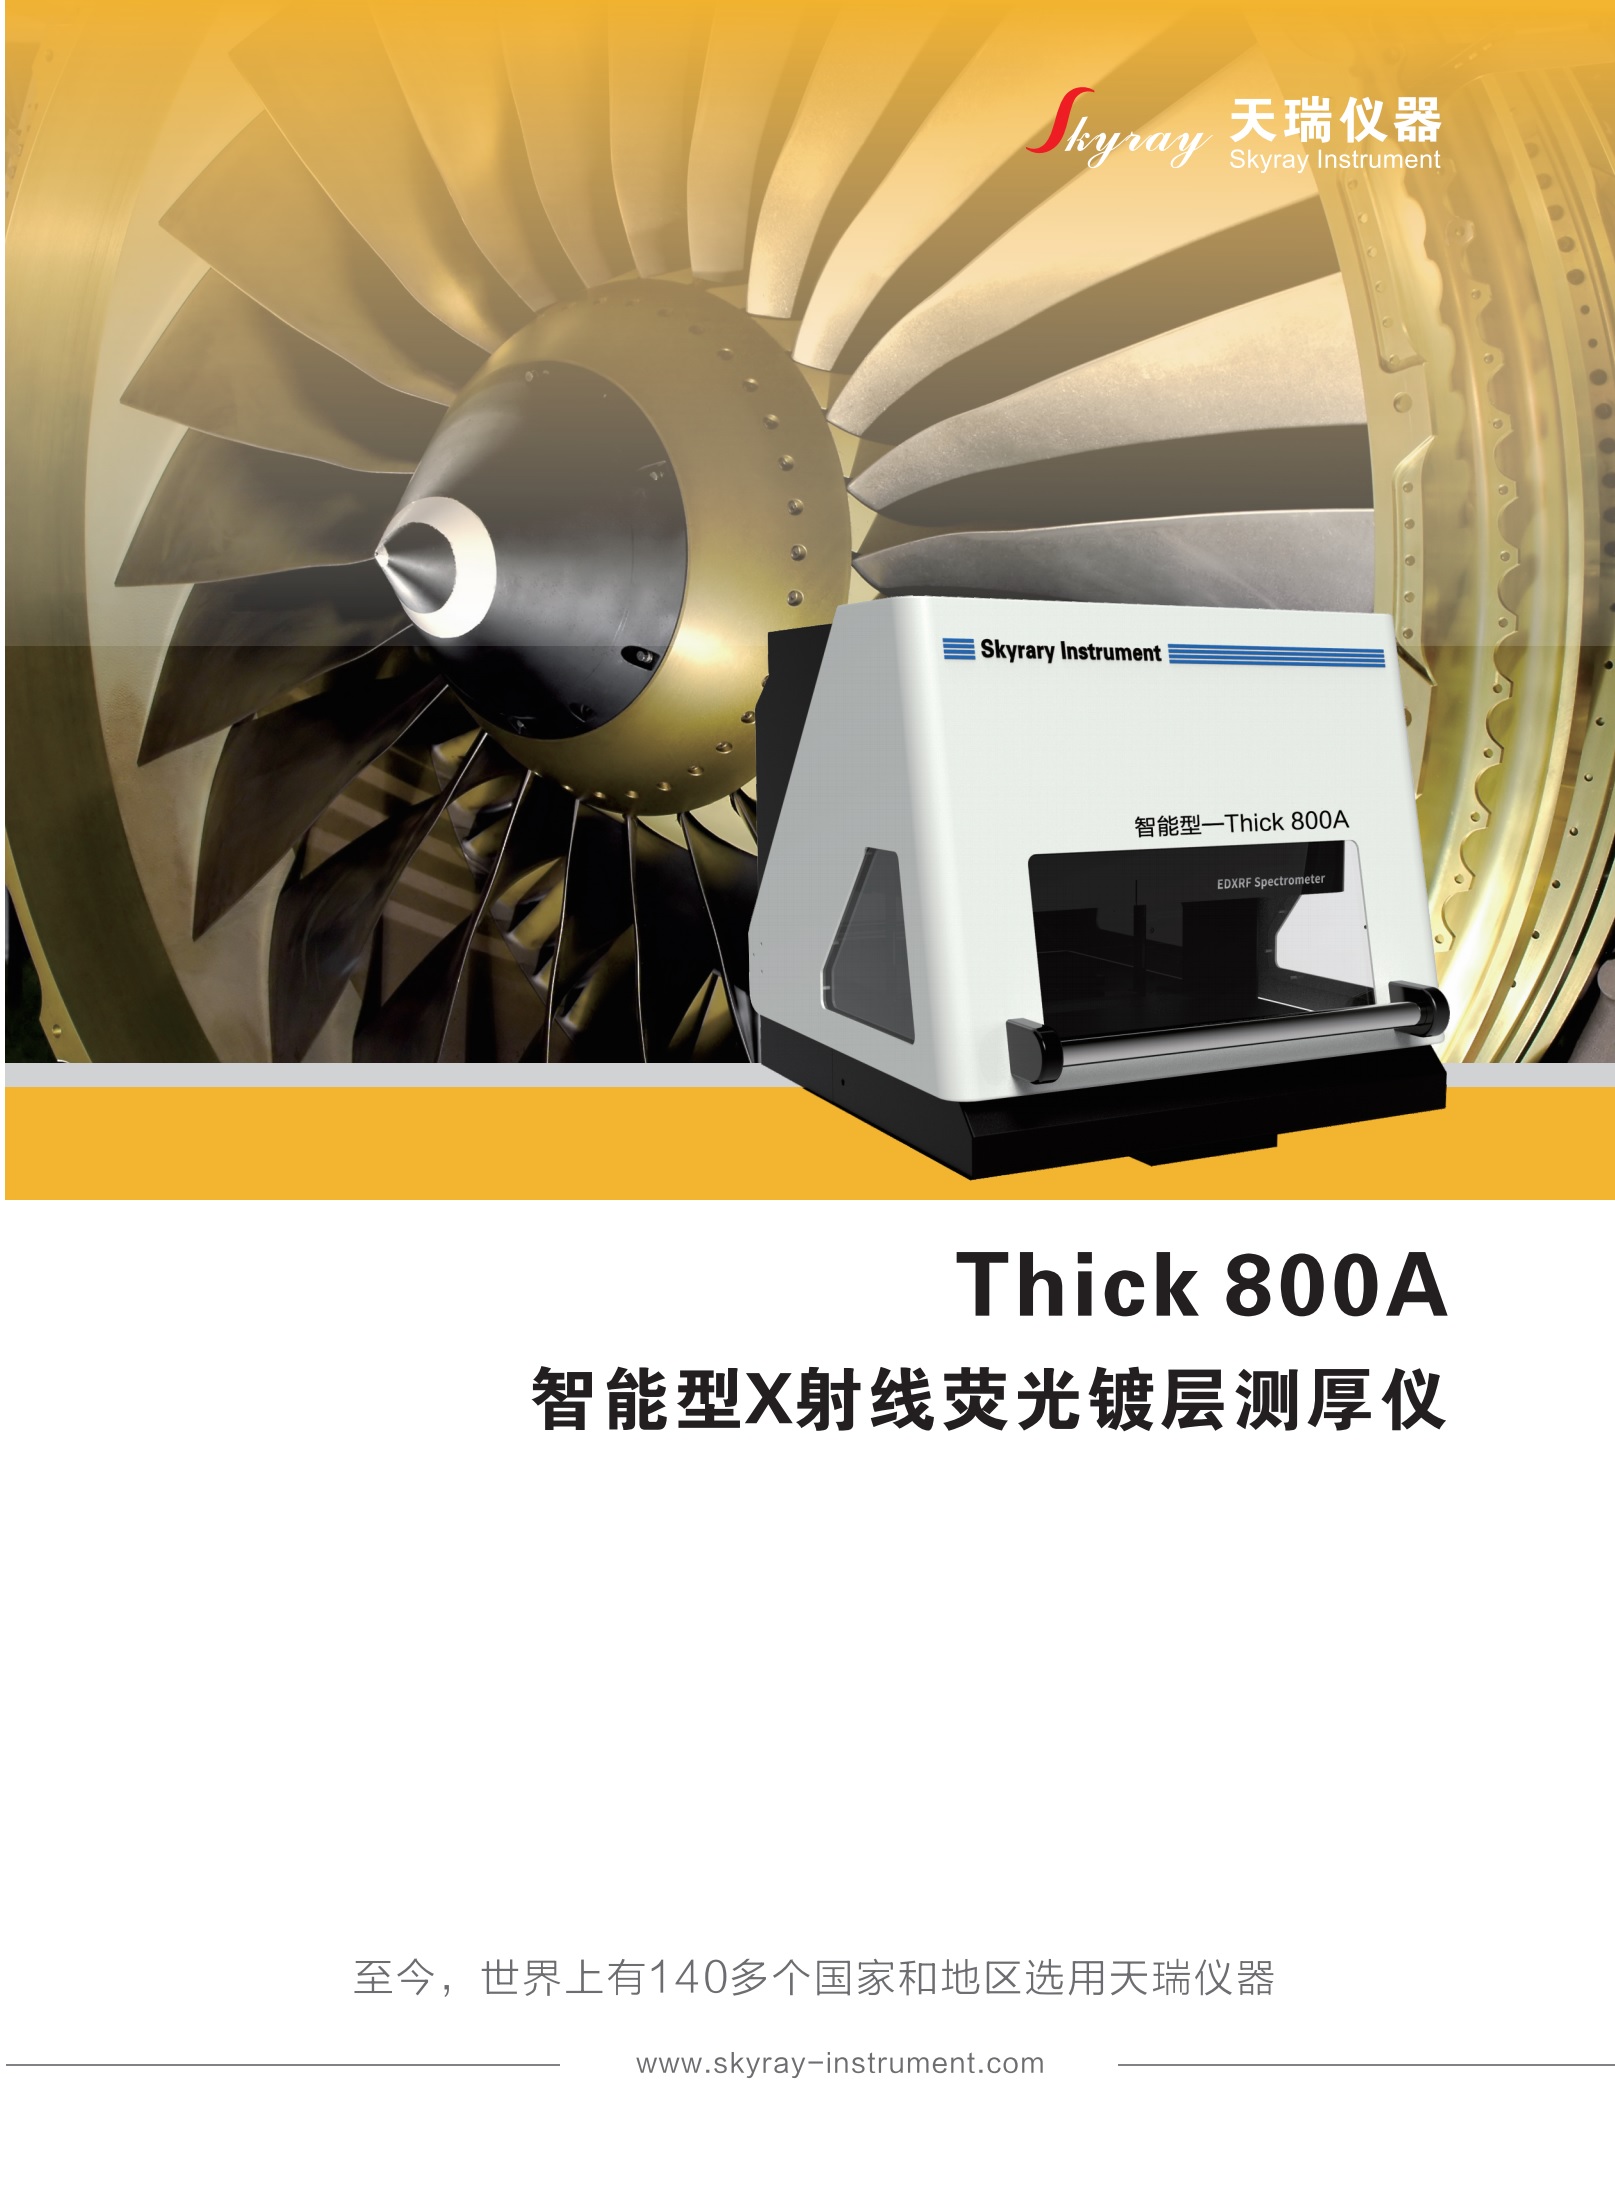 江蘇天瑞儀器股份有限公司-鍍層厚度測試儀THICK 800A 智能型